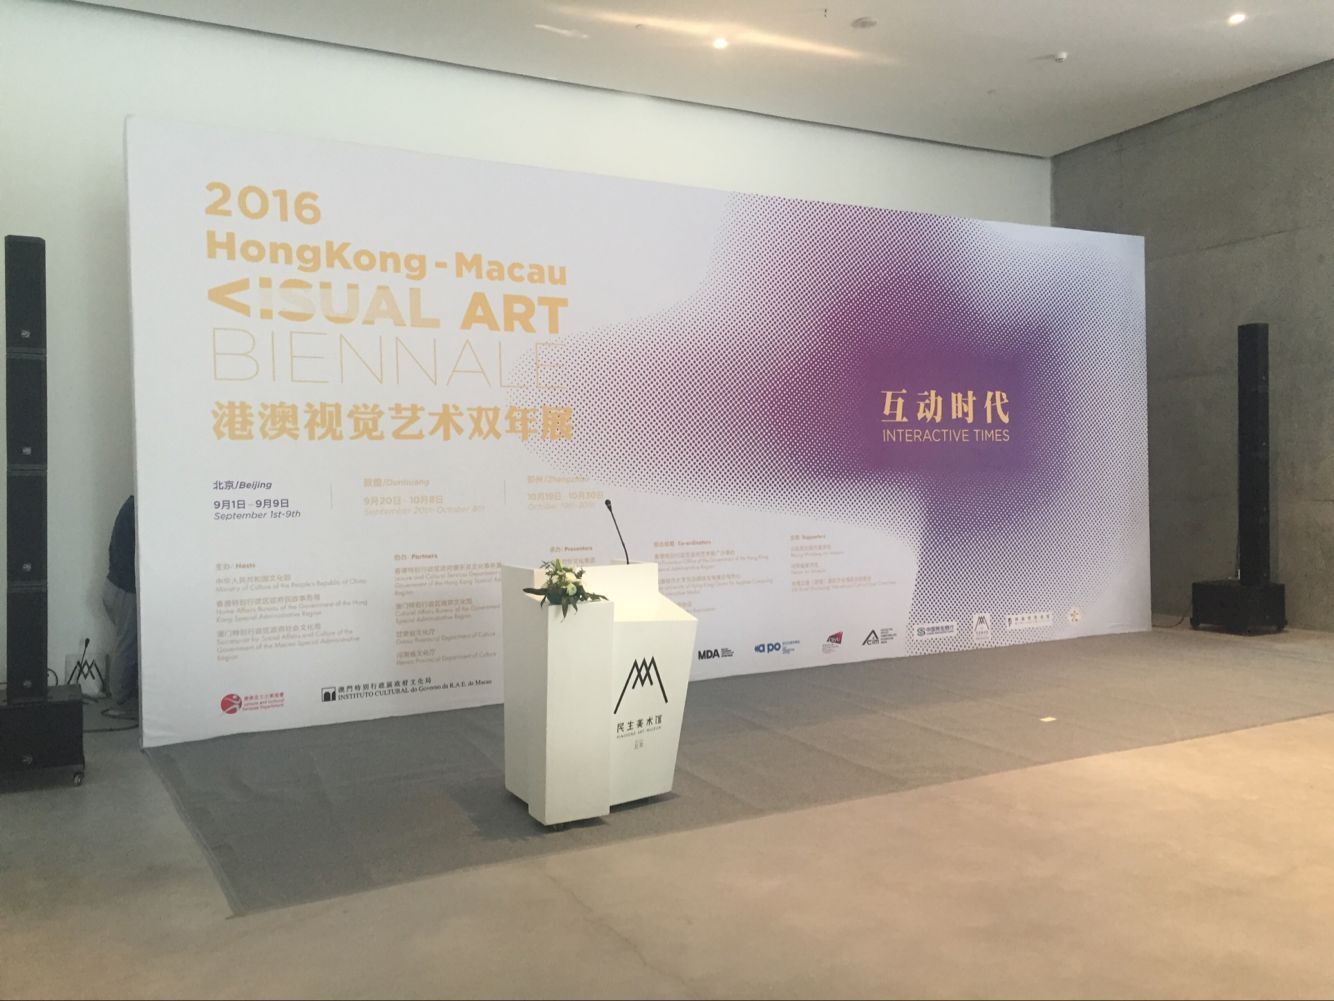 2016港澳视觉艺术双年展揭幕 探讨新媒体时代的互动性